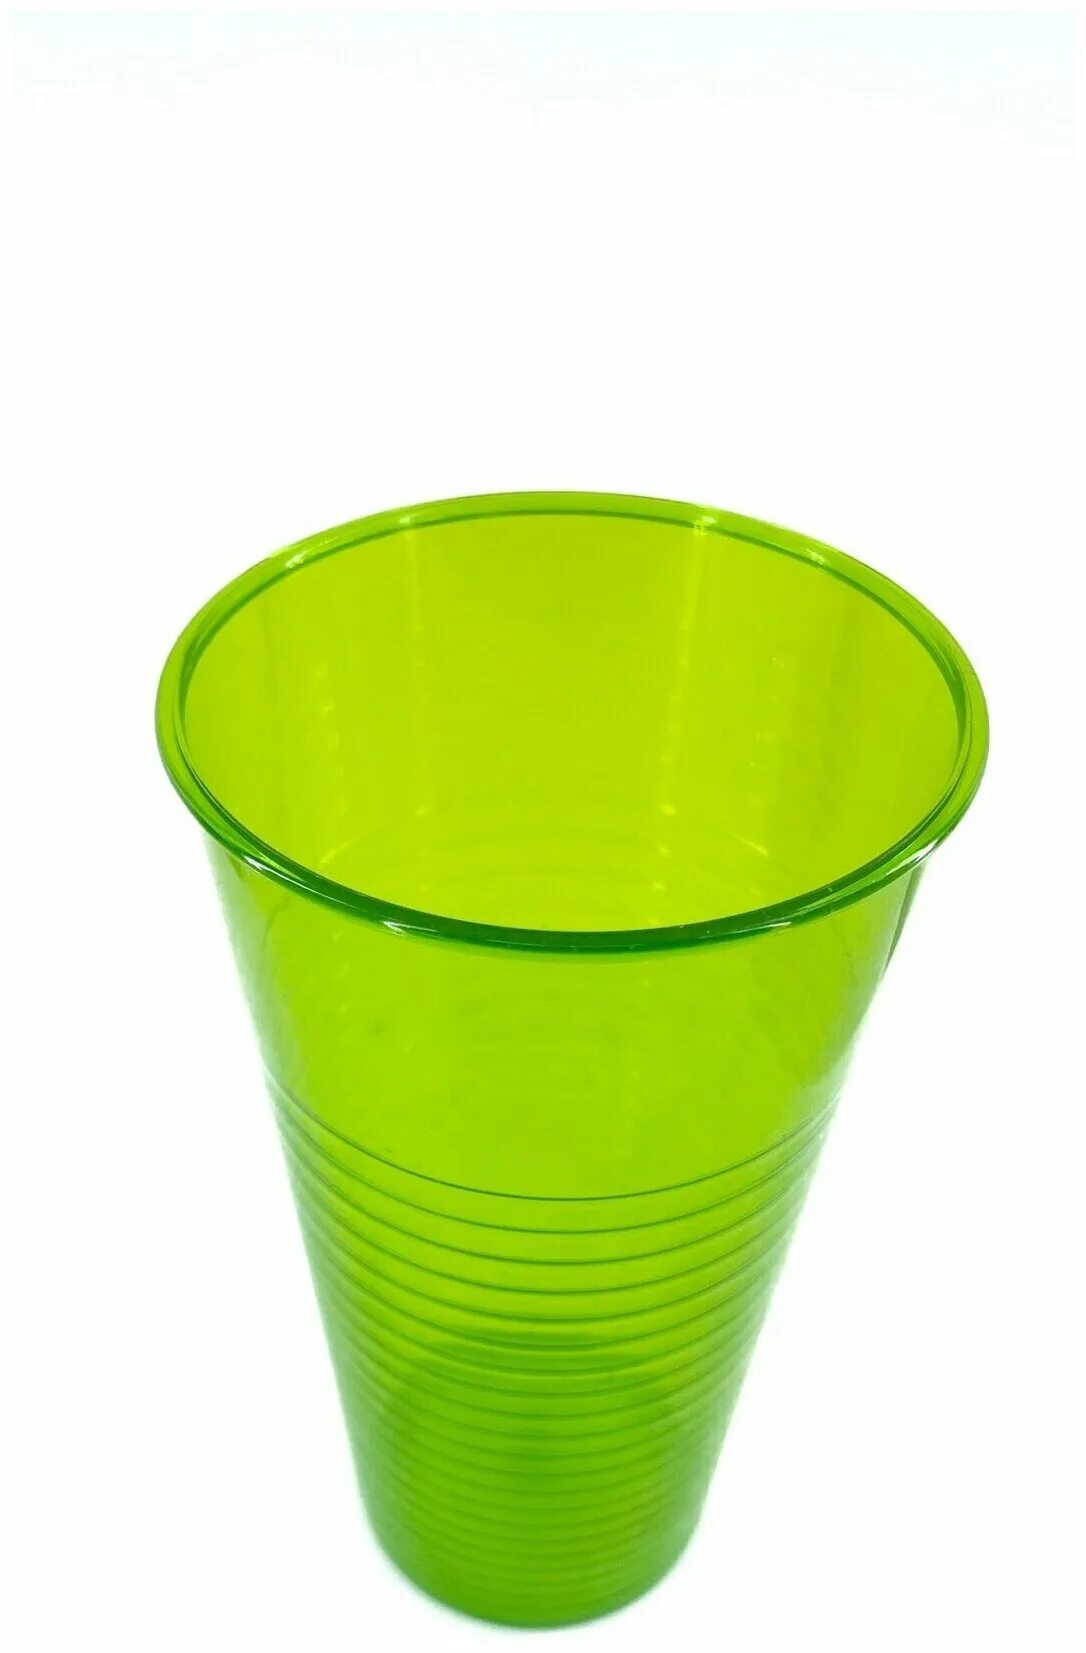 Пластиковые стаканы 500 мл купить. Пластиковые стаканы многоразовые 500 мл. Пластмассовый стаканчик 500 мл. Стаканчик пластиковый 500 мл. Стакан пластиковый, 500 мл.